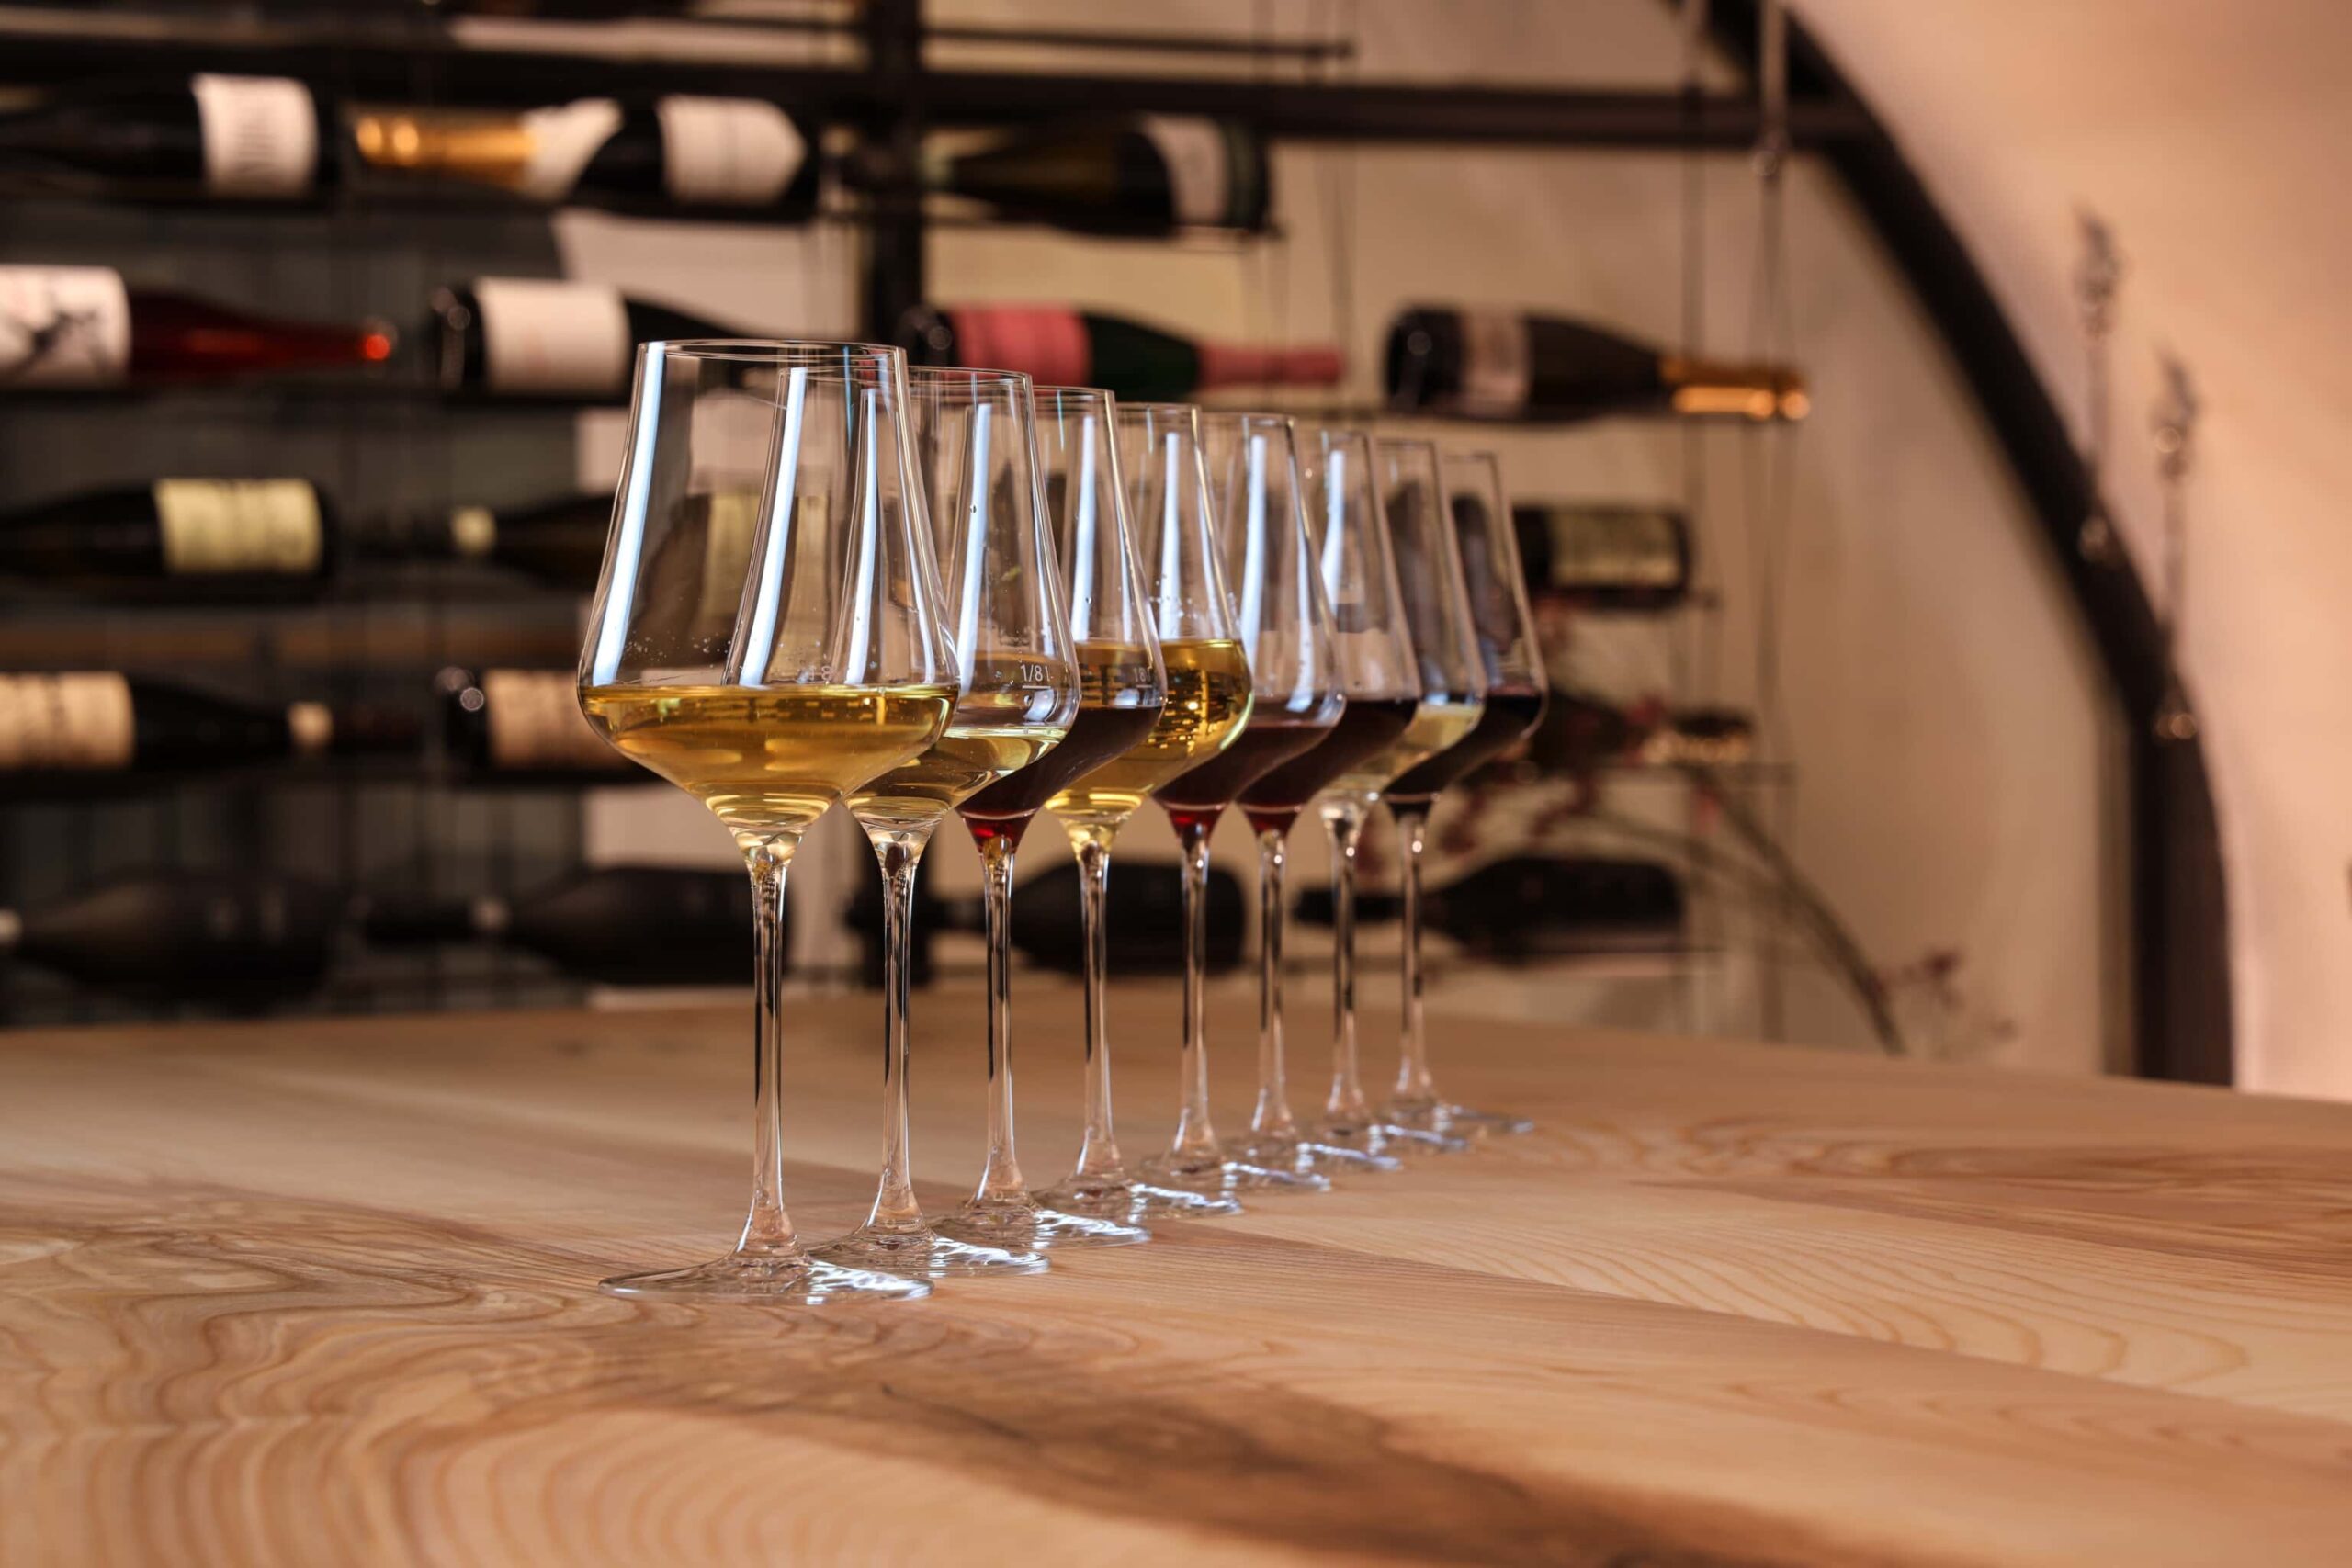 Bild-Header: Close up von acht gefüllten Weingläsern, die diagonal aufgereiht am Tisch stehen. Im Hintergrund sind verschwommen Schaumweine zu erkennen.